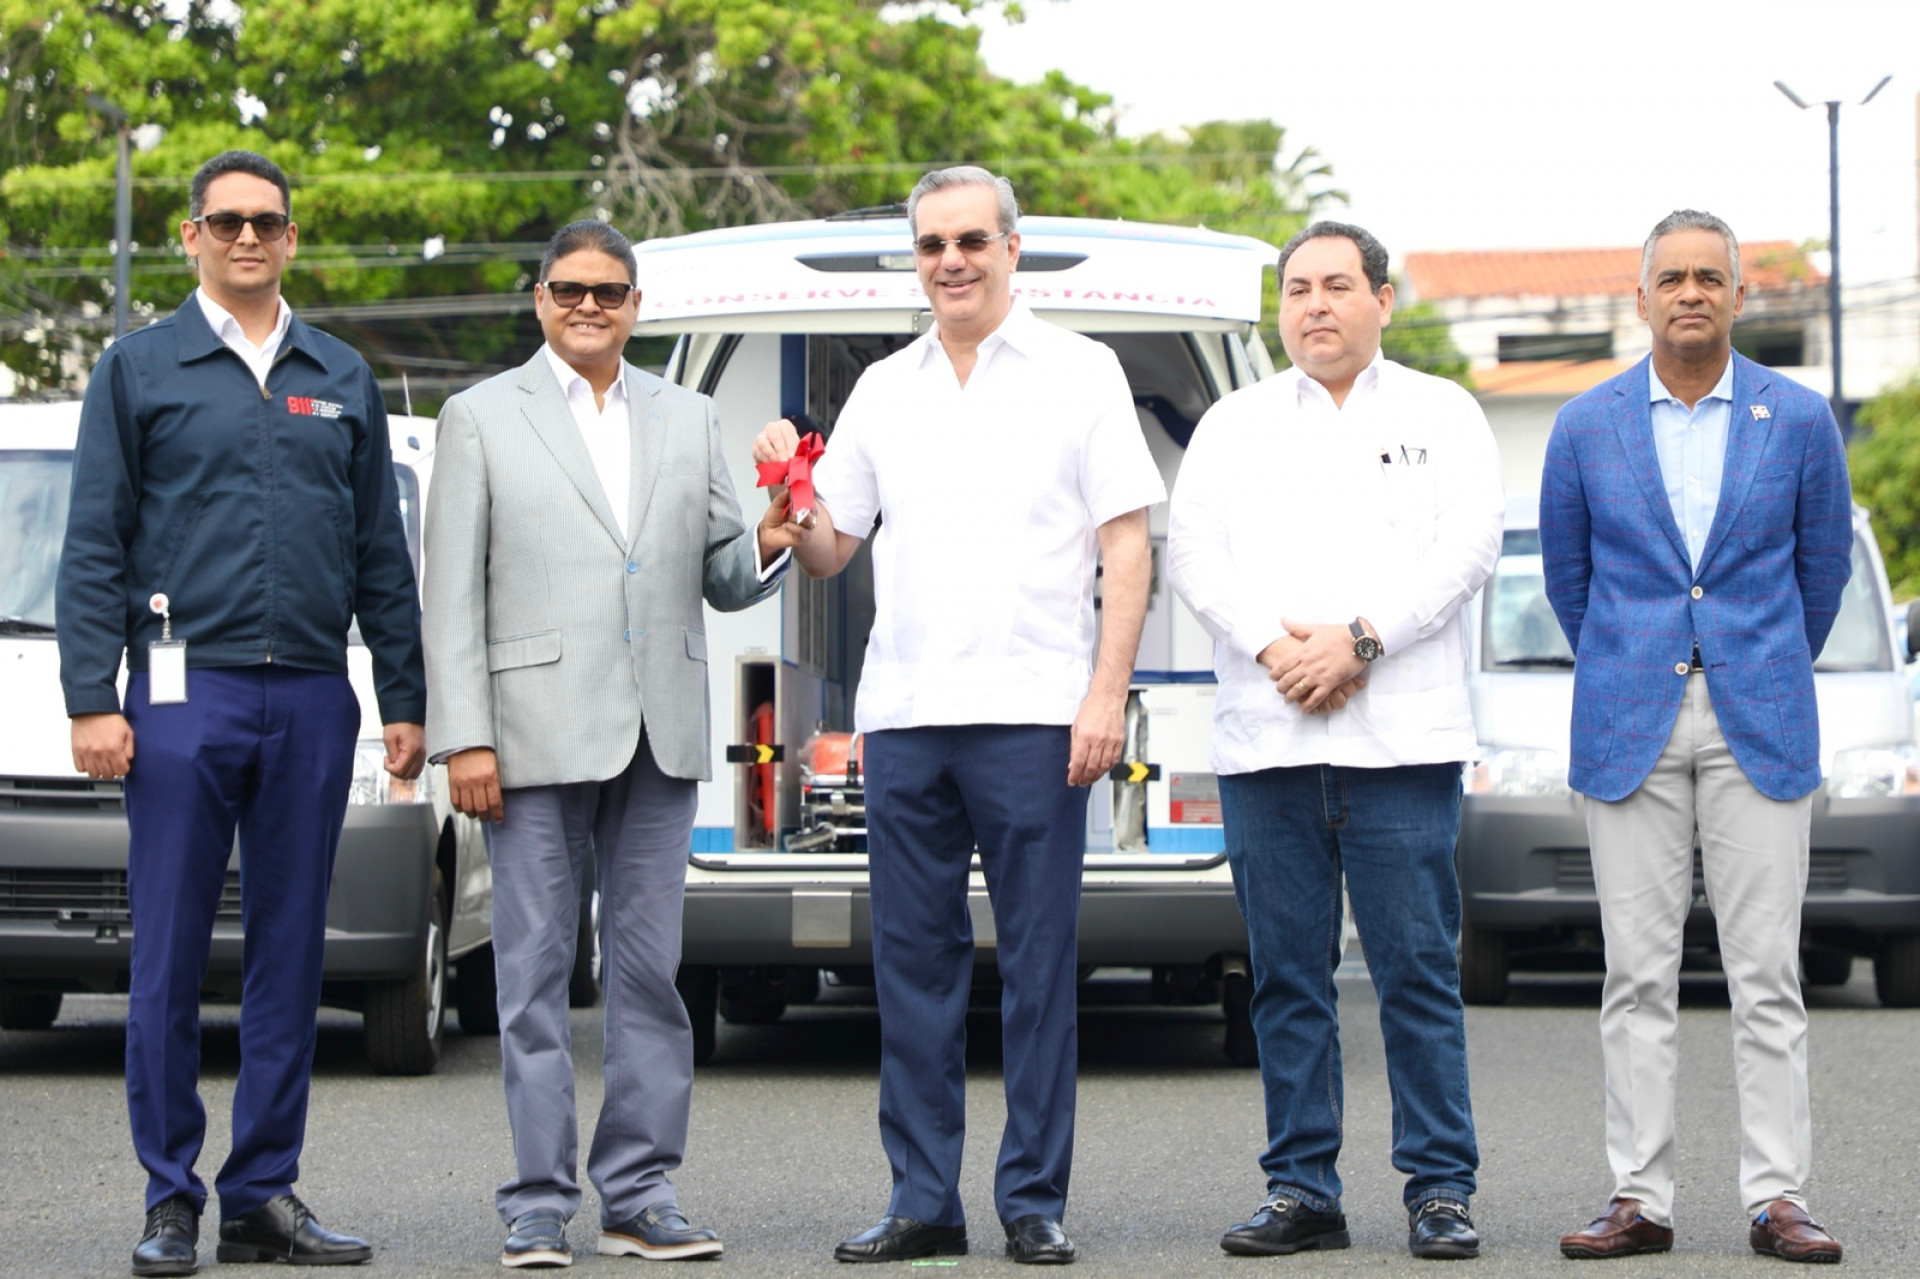 REPÚBLICA DOMINICANA: Presidente Abinader dice pasará Nochebuena y Navidad en familia; reitera llamado a la prudencia y evitar excesos